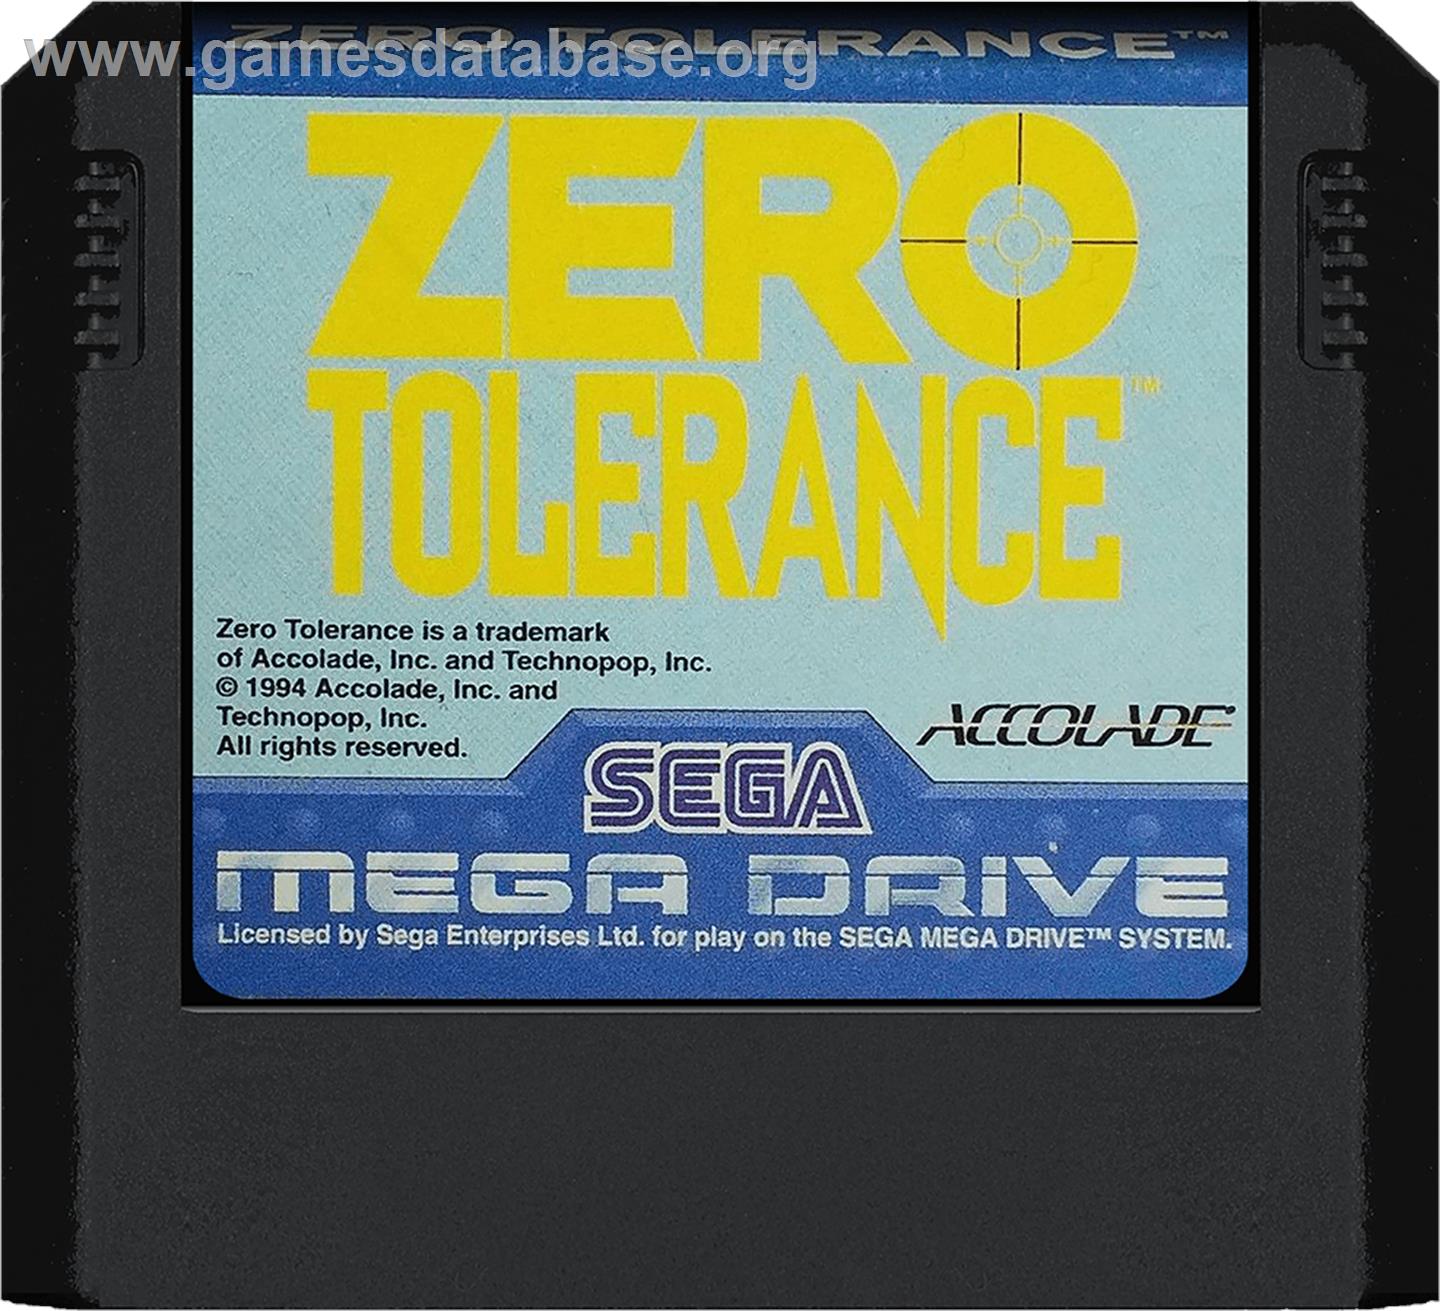 Zero Tolerance - Sega Genesis - Artwork - Cartridge